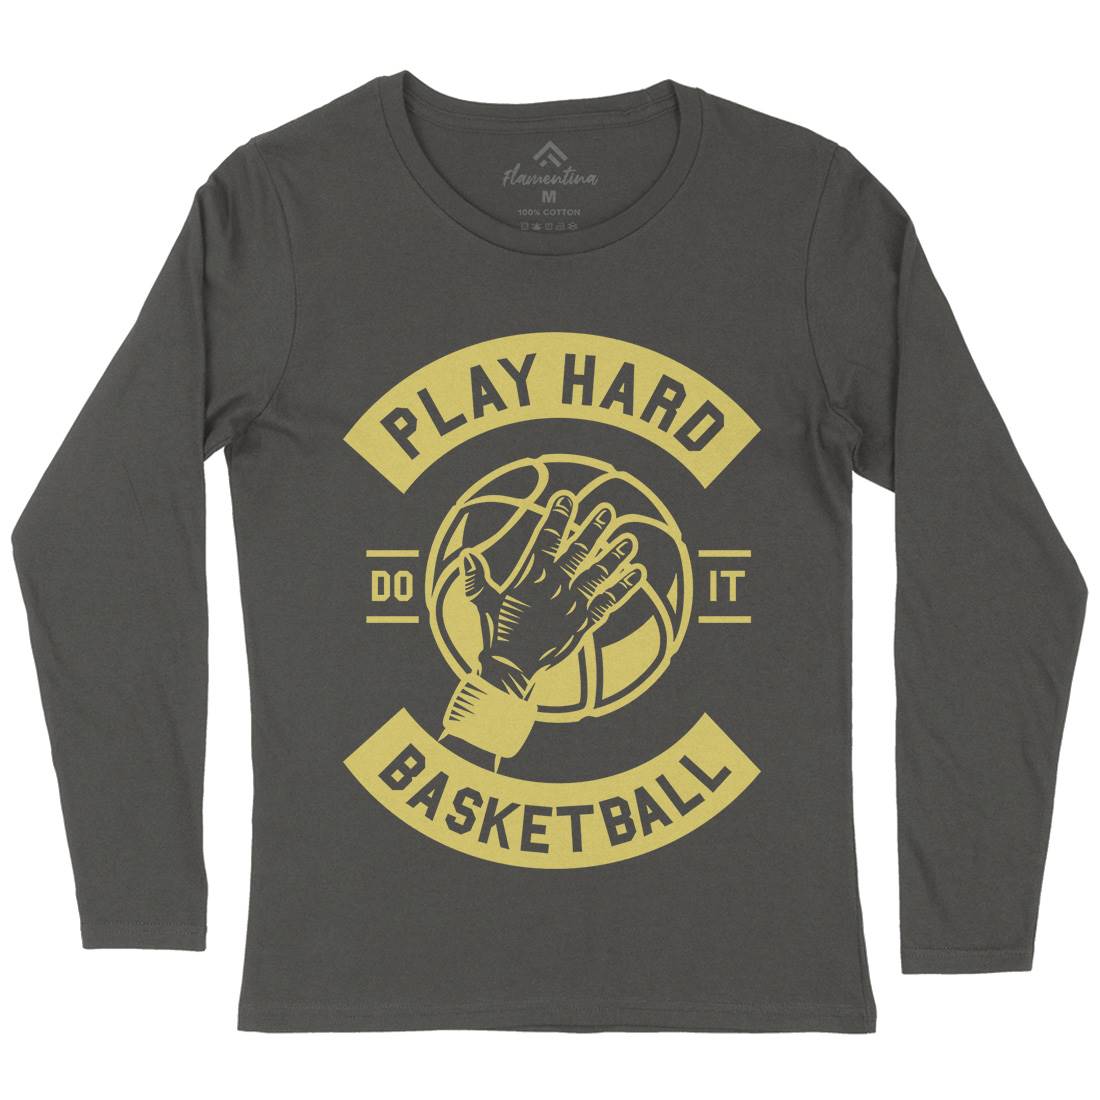 Play Hard Basketball Womens Long Sleeve T-Shirt Sport A261